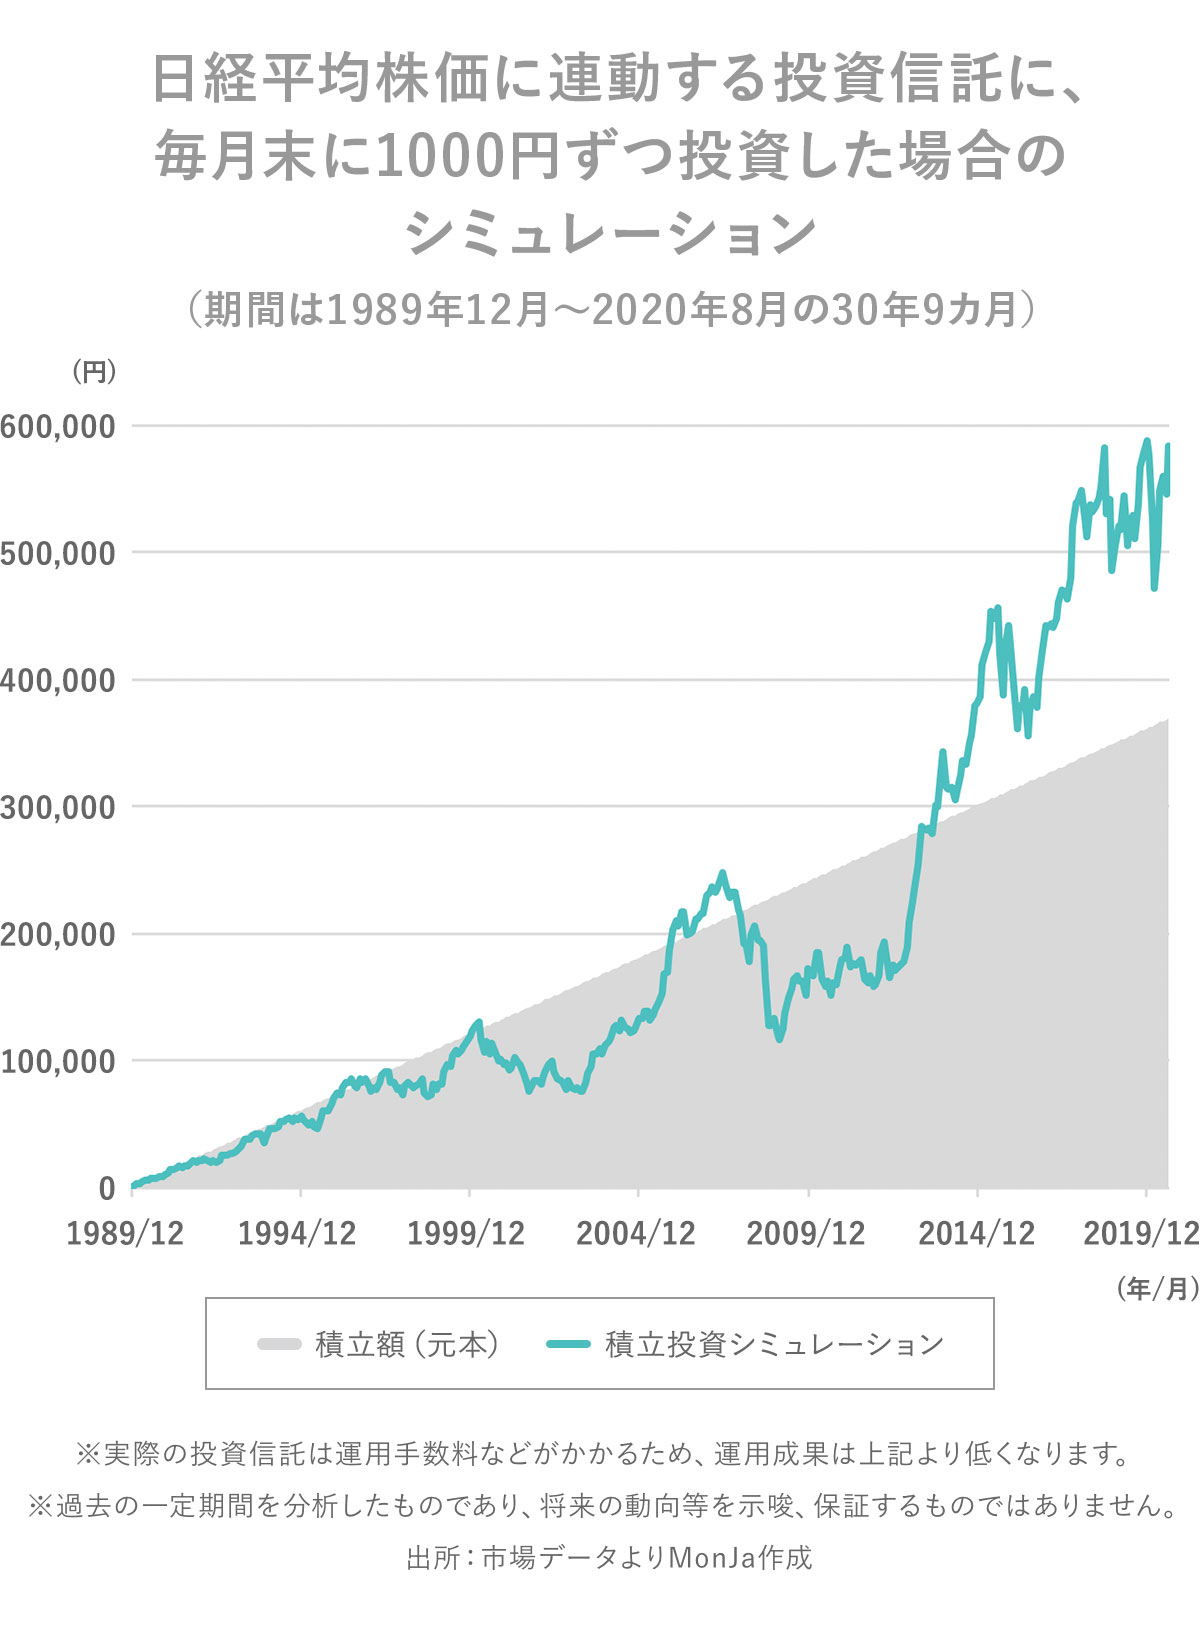 日経平均株価に連動する投資信託に、毎月末に1000円ずつ投資した場合のシミュレーション